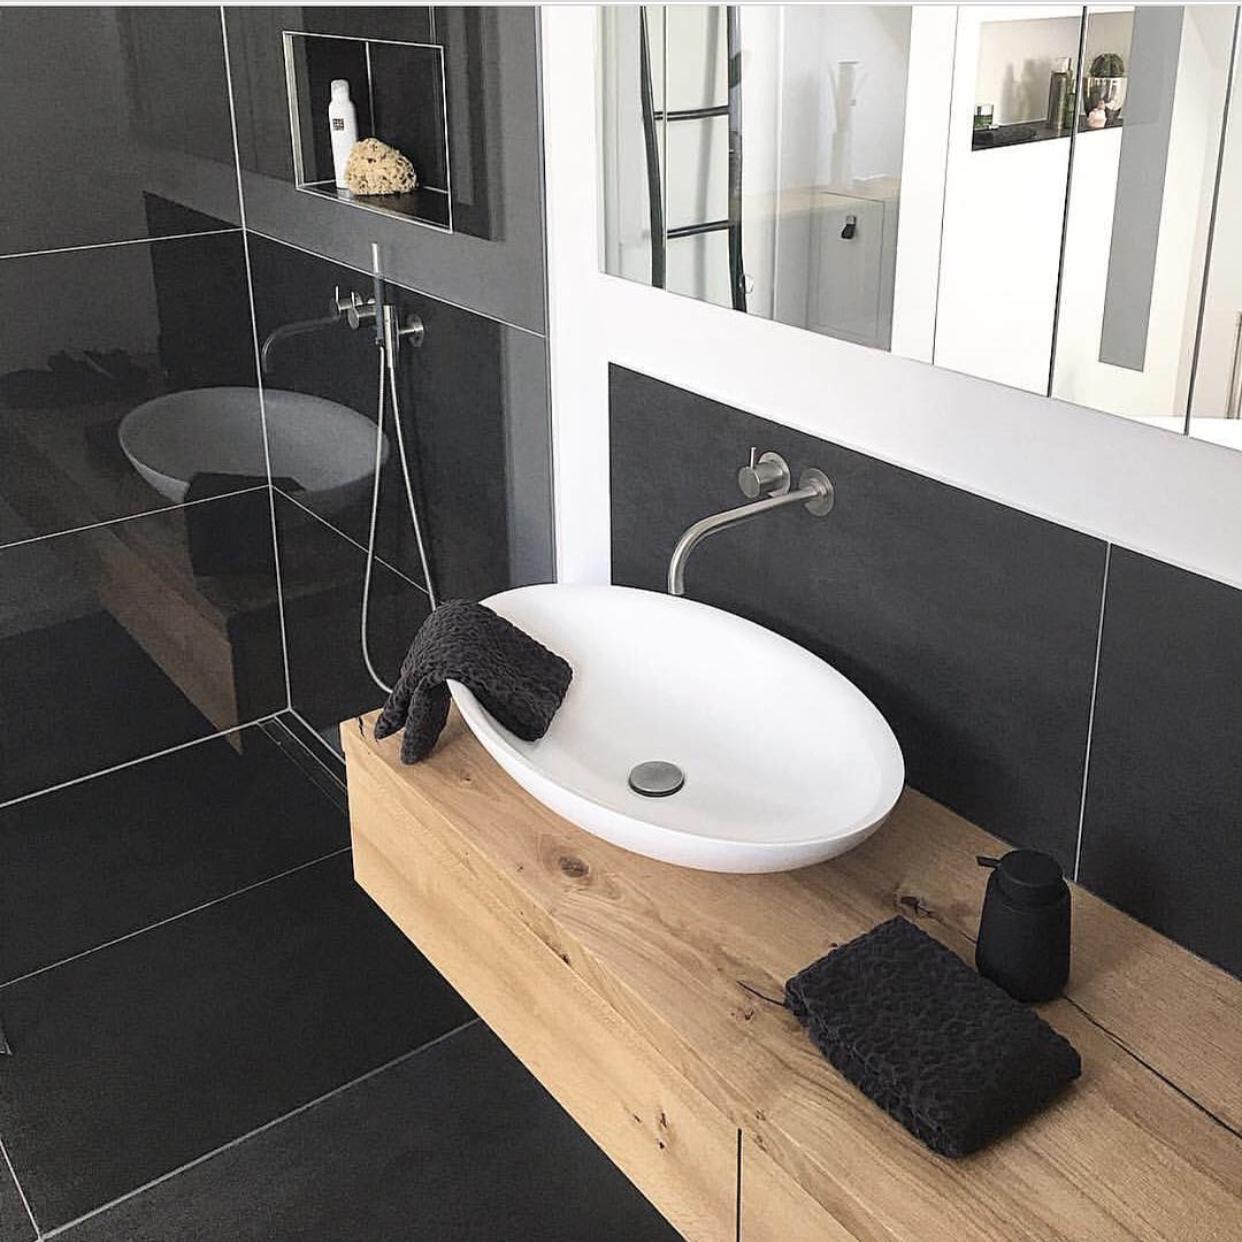 Badezimmer | Details 

#badezimmer #waschtisch #eiche #echtholz #volaarmatur #dusche #blackandwhite 